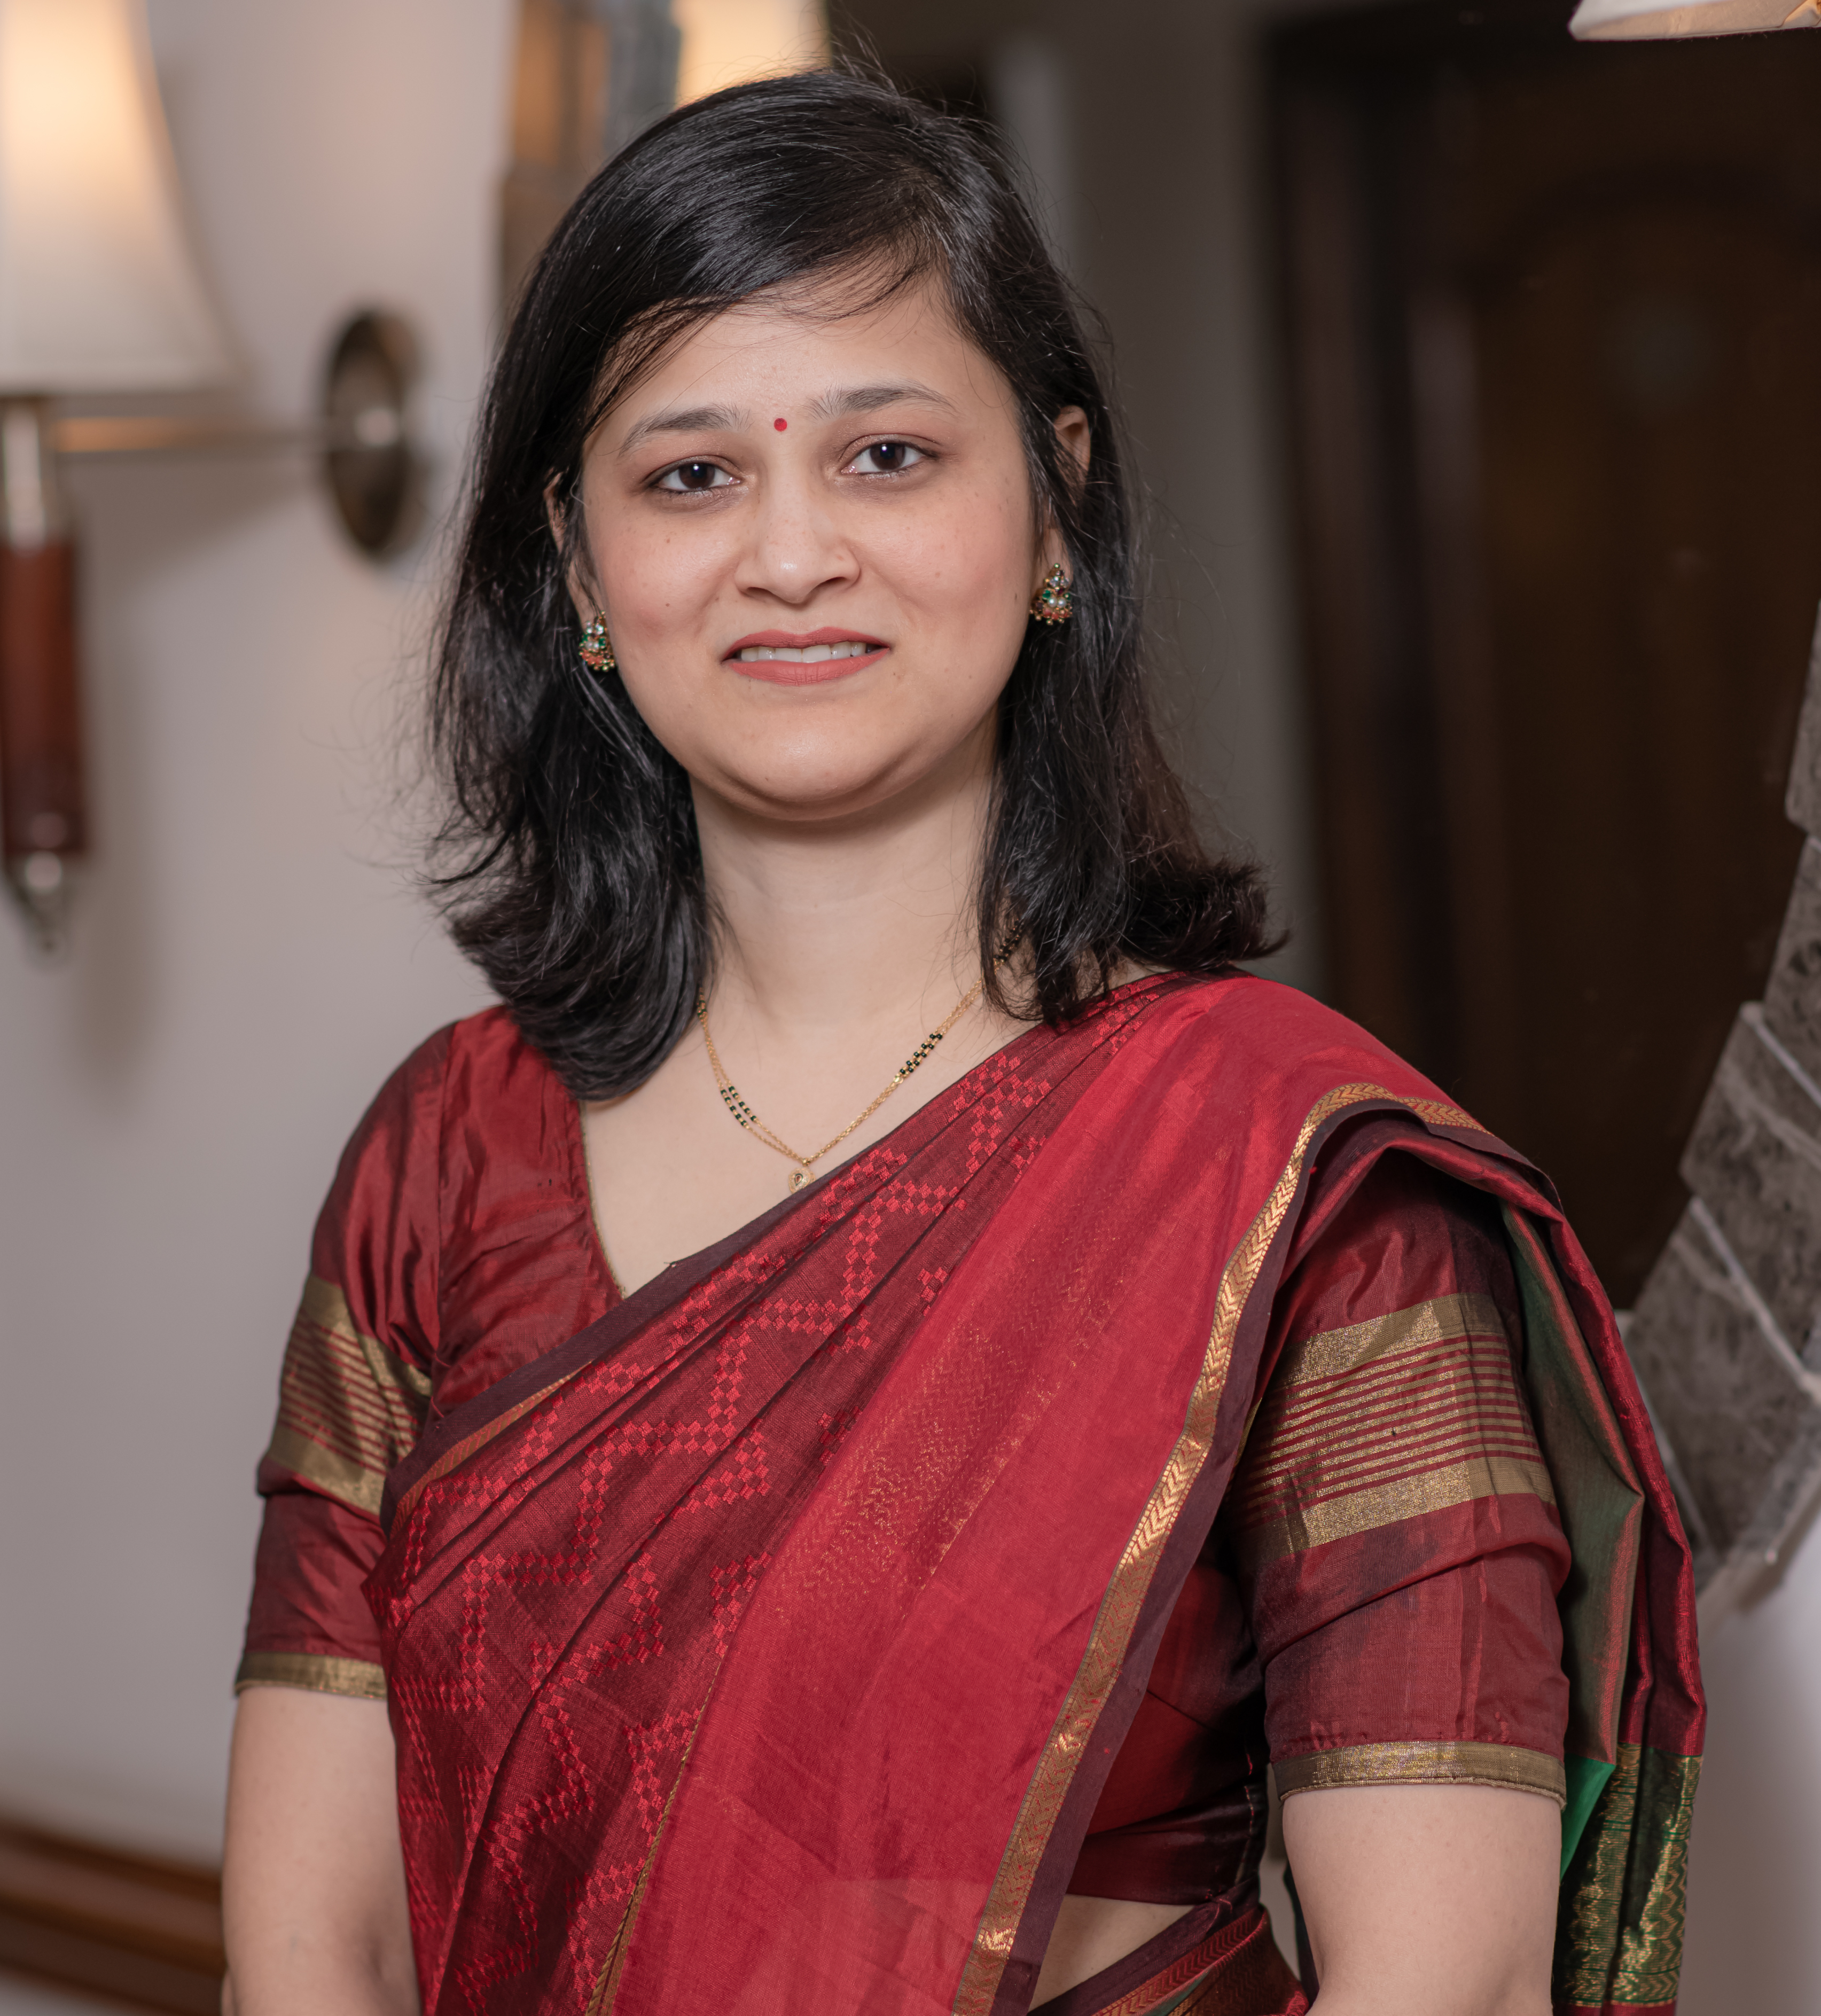 Dr. Pranita Sahay